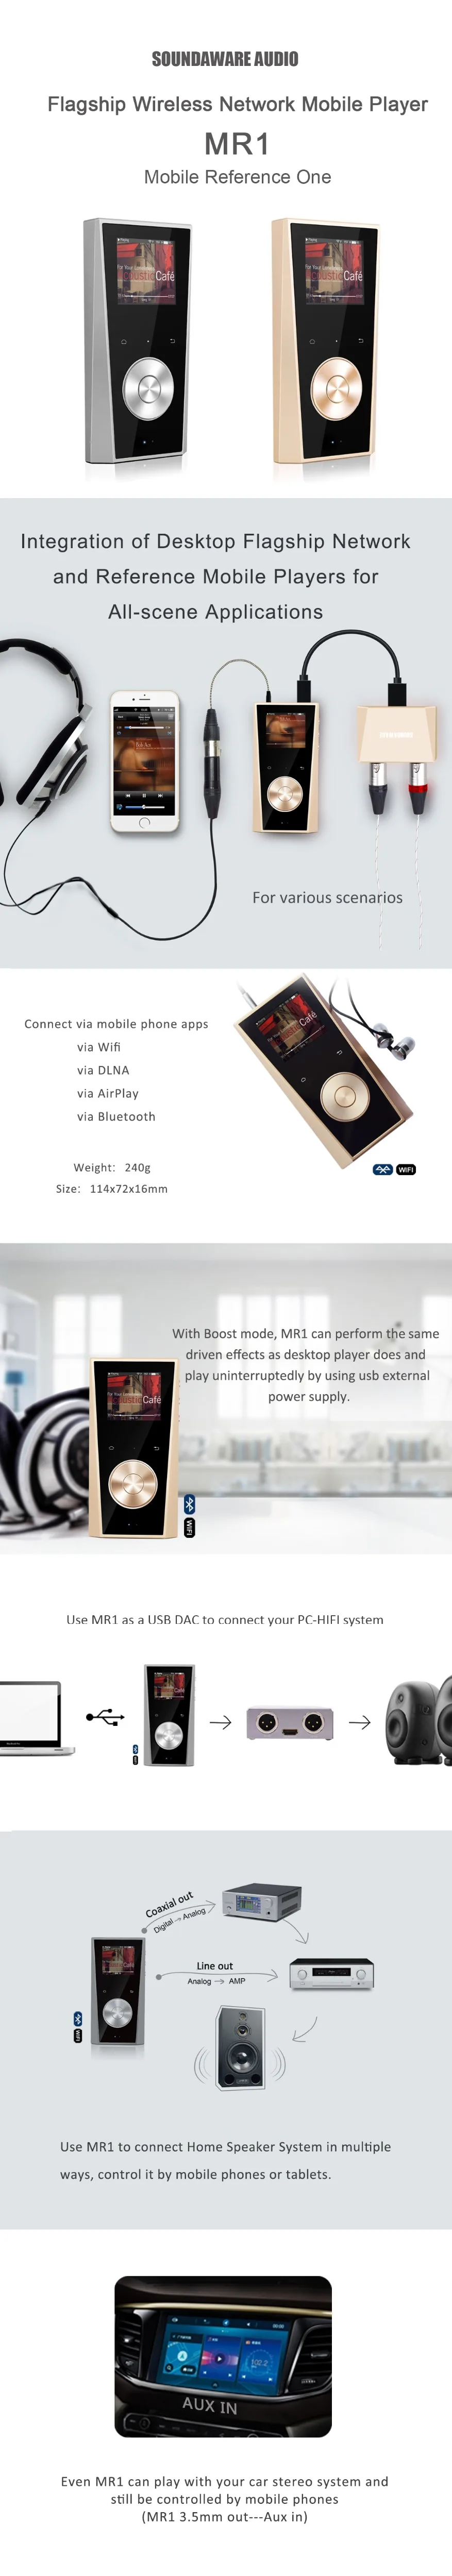 Soundaware MR1 флагманский беспроводной сетевой мобильный музыкальный плеер Bluetooth AirPlay USB DAC Full Scene приложения MP3